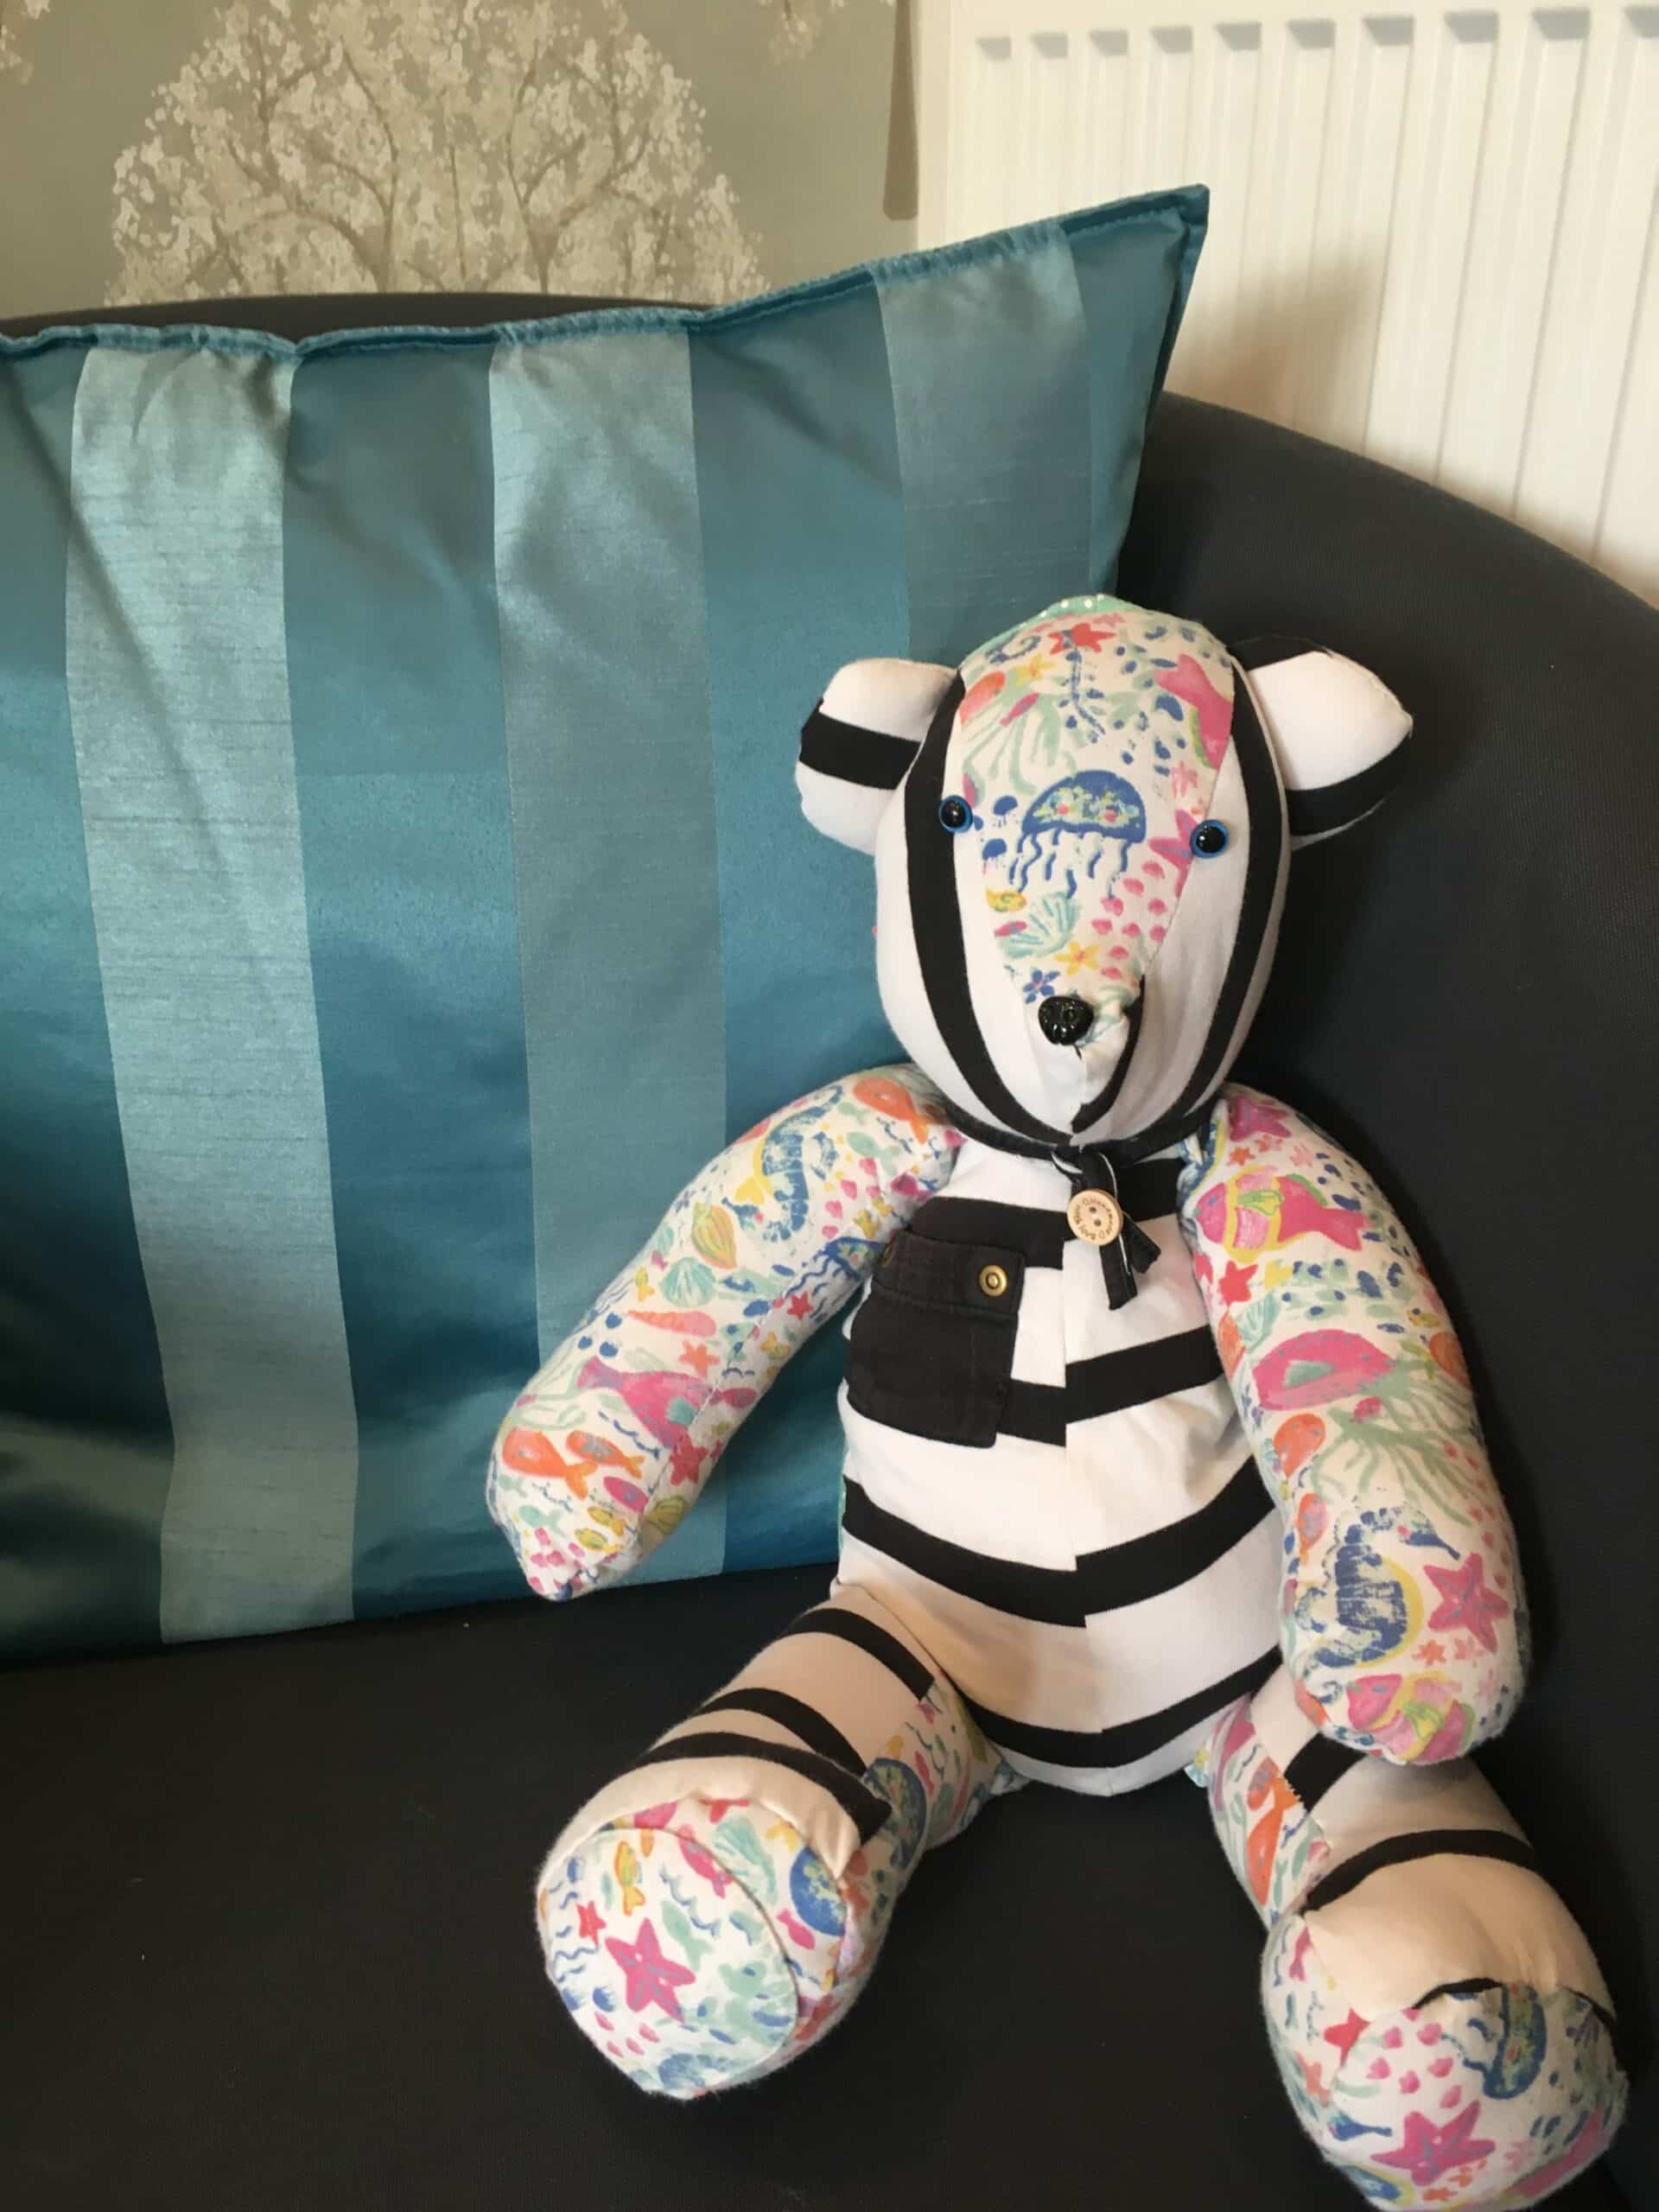 Teddy bear on sofa